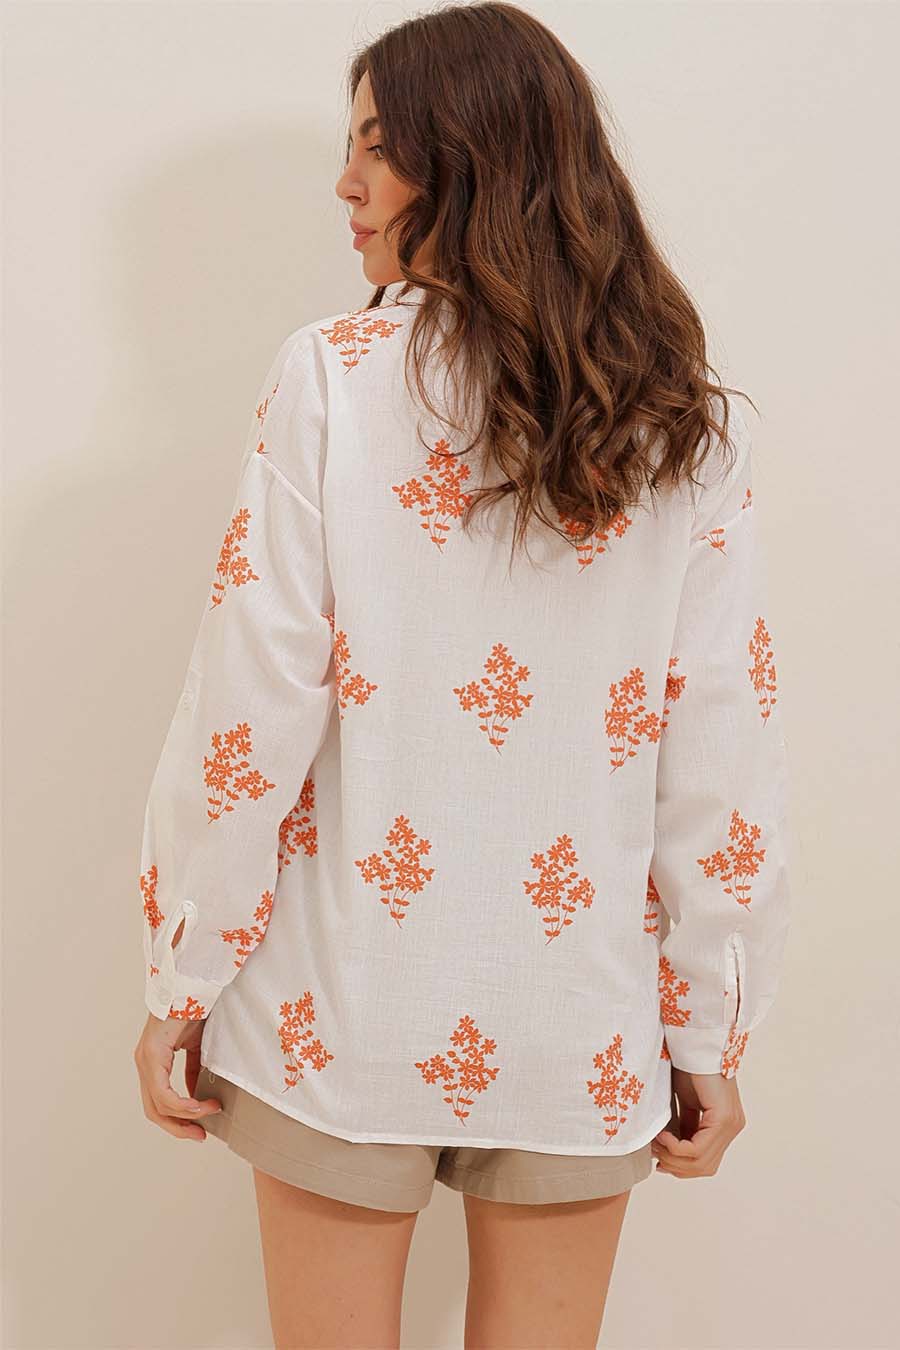 Γυναικείο πουκάμισο Darana, Λευκό/Πορτοκάλι 5